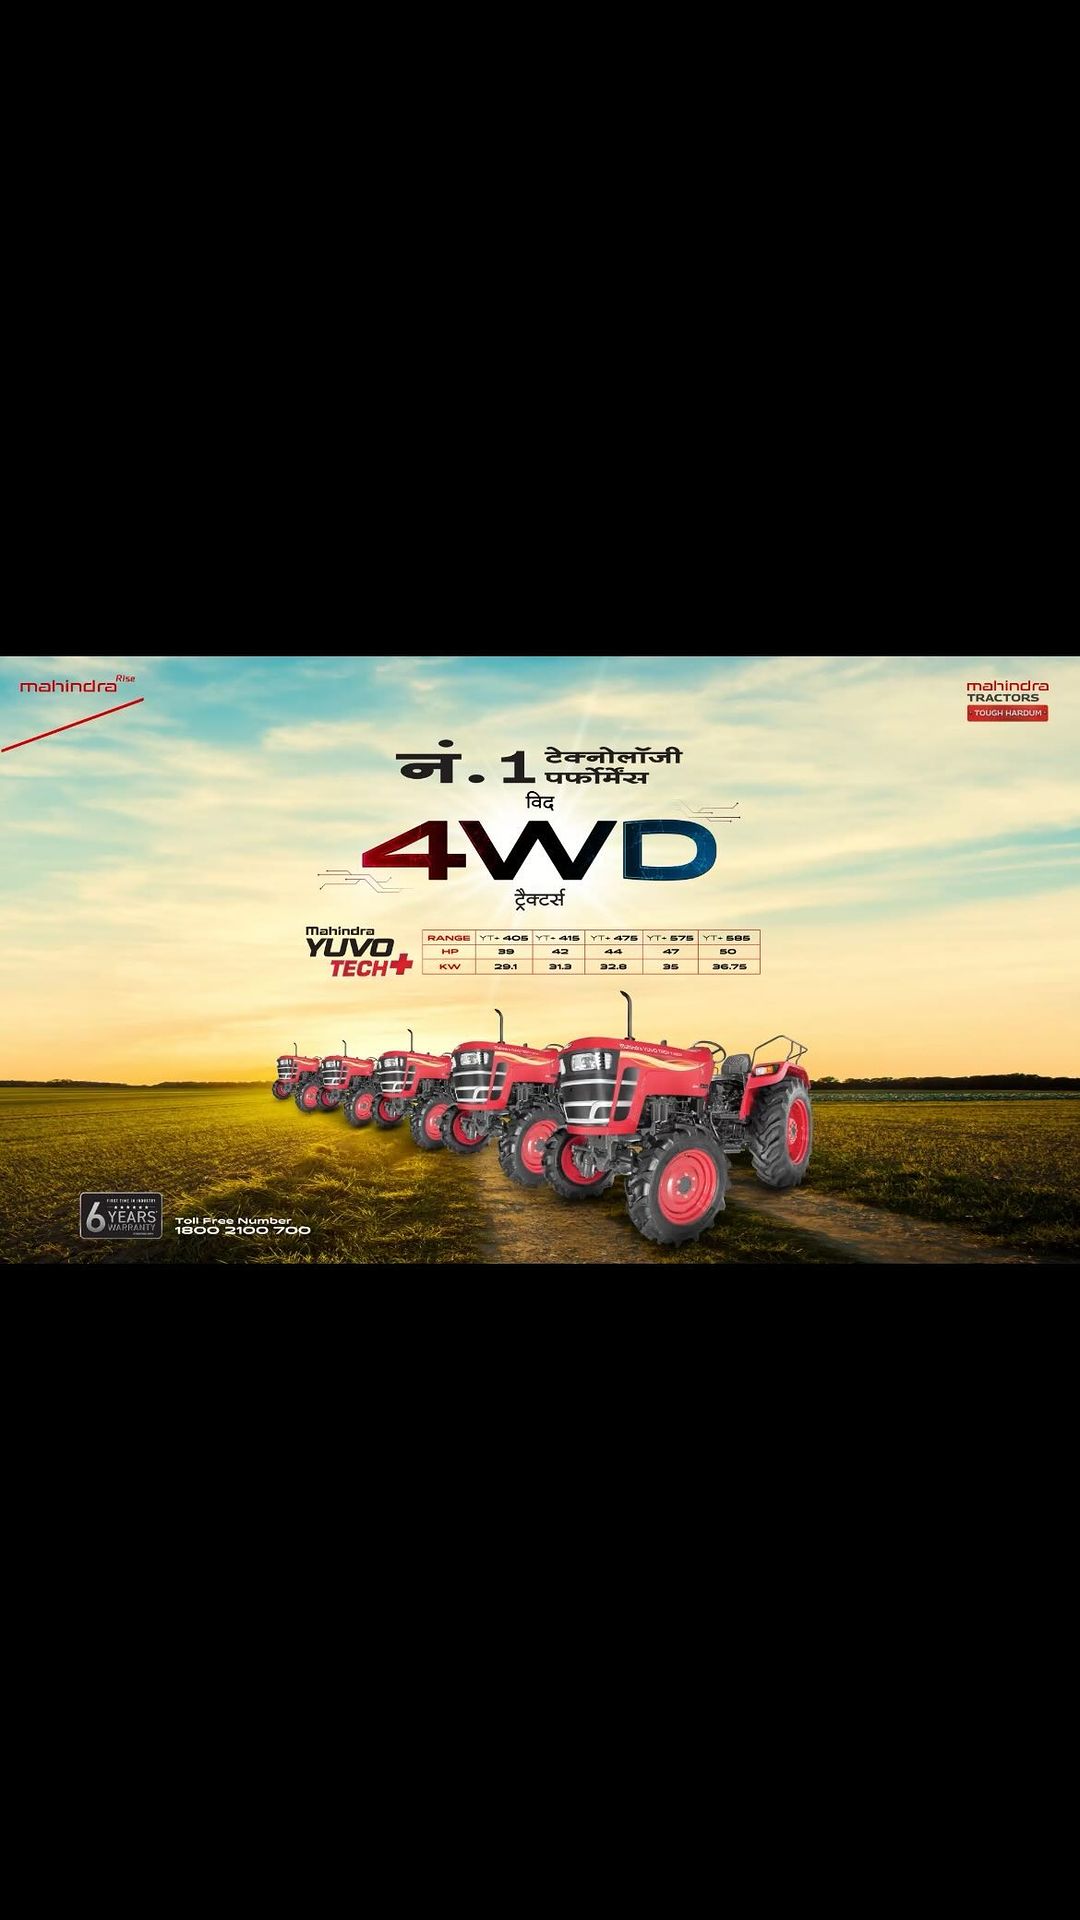 महिंद्रा का Yuvo Tech+ 4WD ट्रैक्टर, अपनी कम डीजल खपत और मजबूत क्षमता के साथ खेती को उत्कृष्ट बनाता है। यह एक ही ट्रेक्ट...